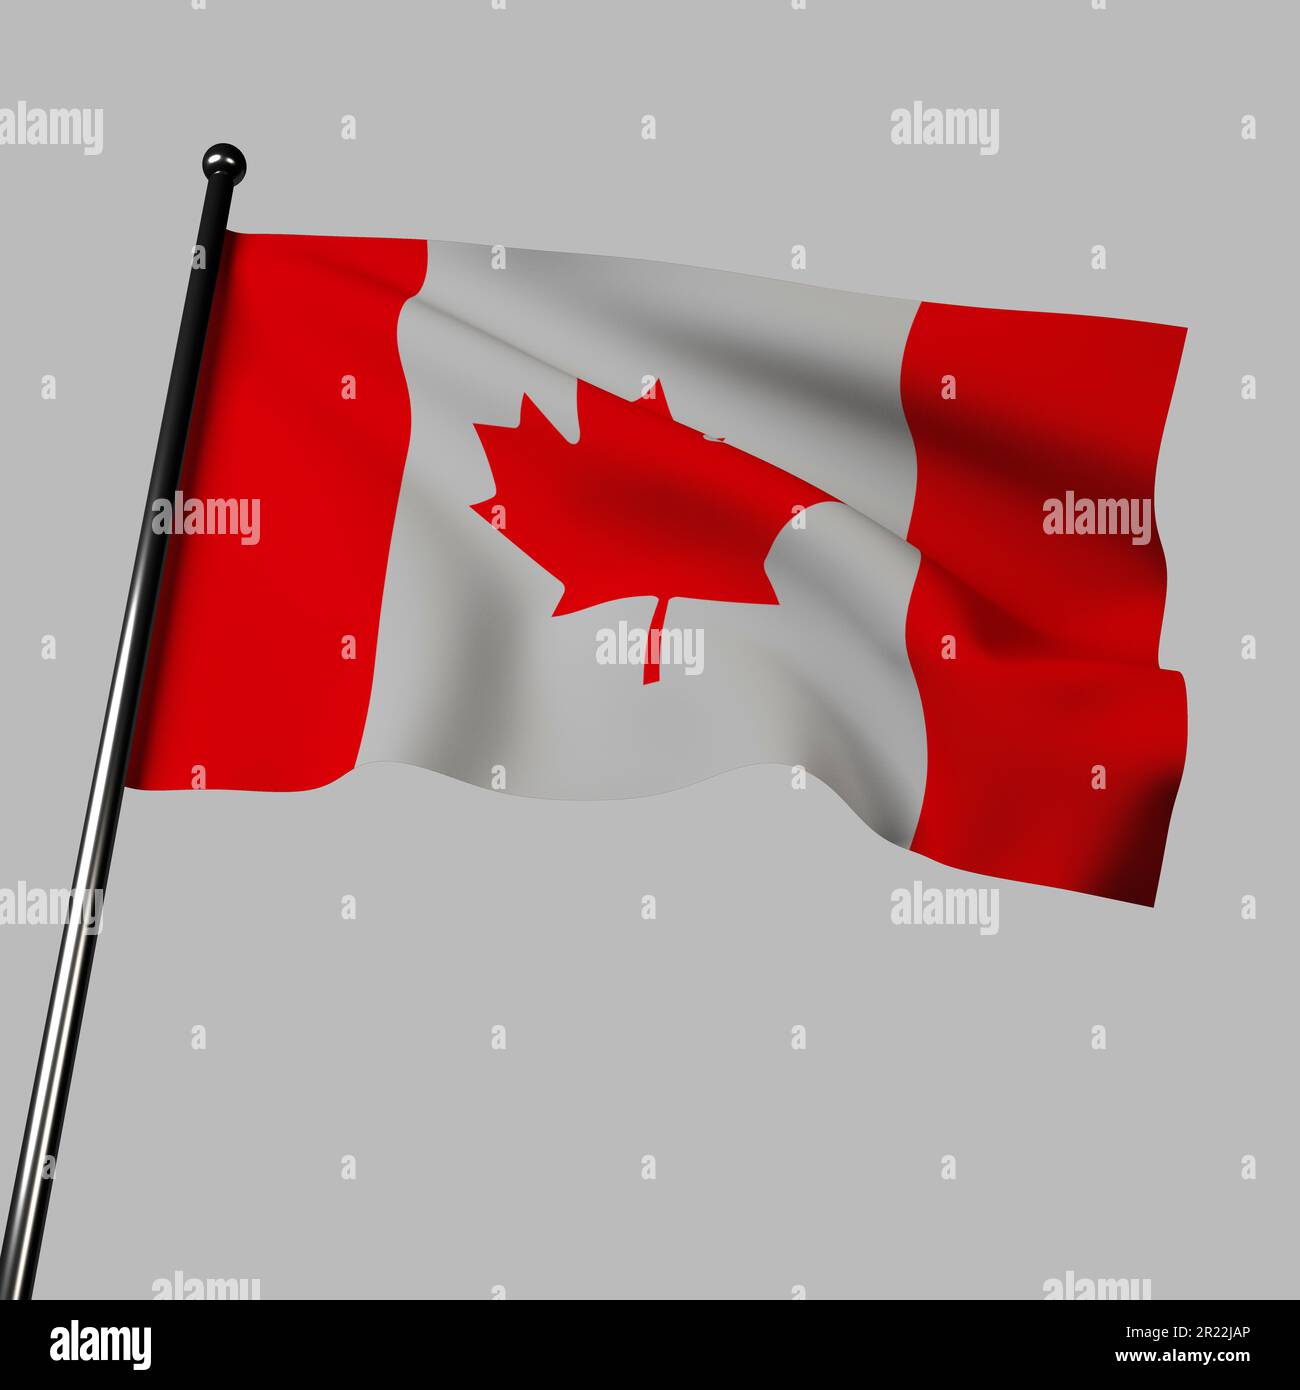 3D rappresentazione della bandiera canadese che ondola su sfondo grigio. Campo rosso con quadrato bianco al centro, con simbolo di foglia di acero rosso che rappresenta il beau naturale Foto Stock